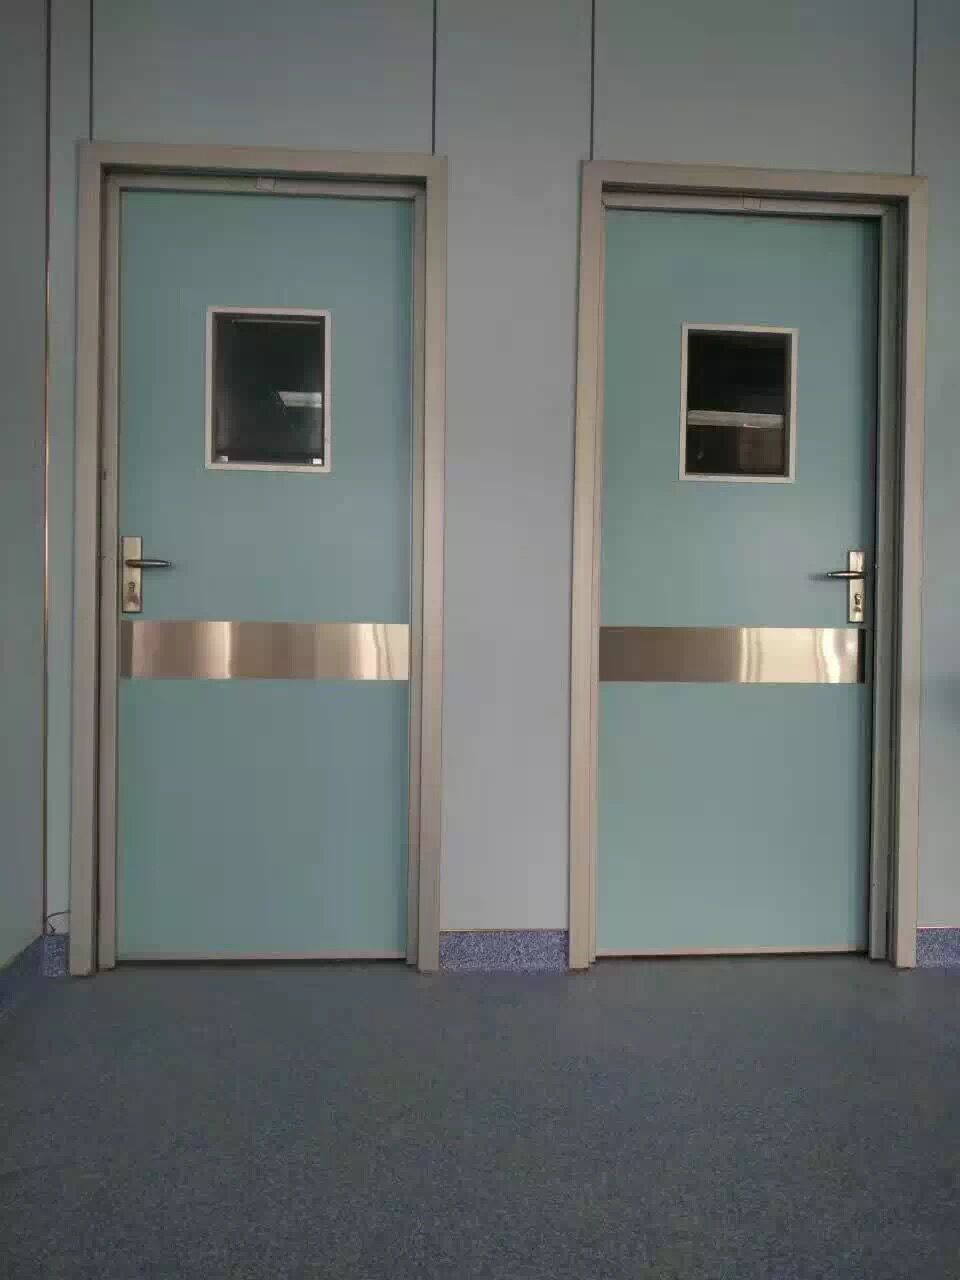 Manual Swing Hospital Doors